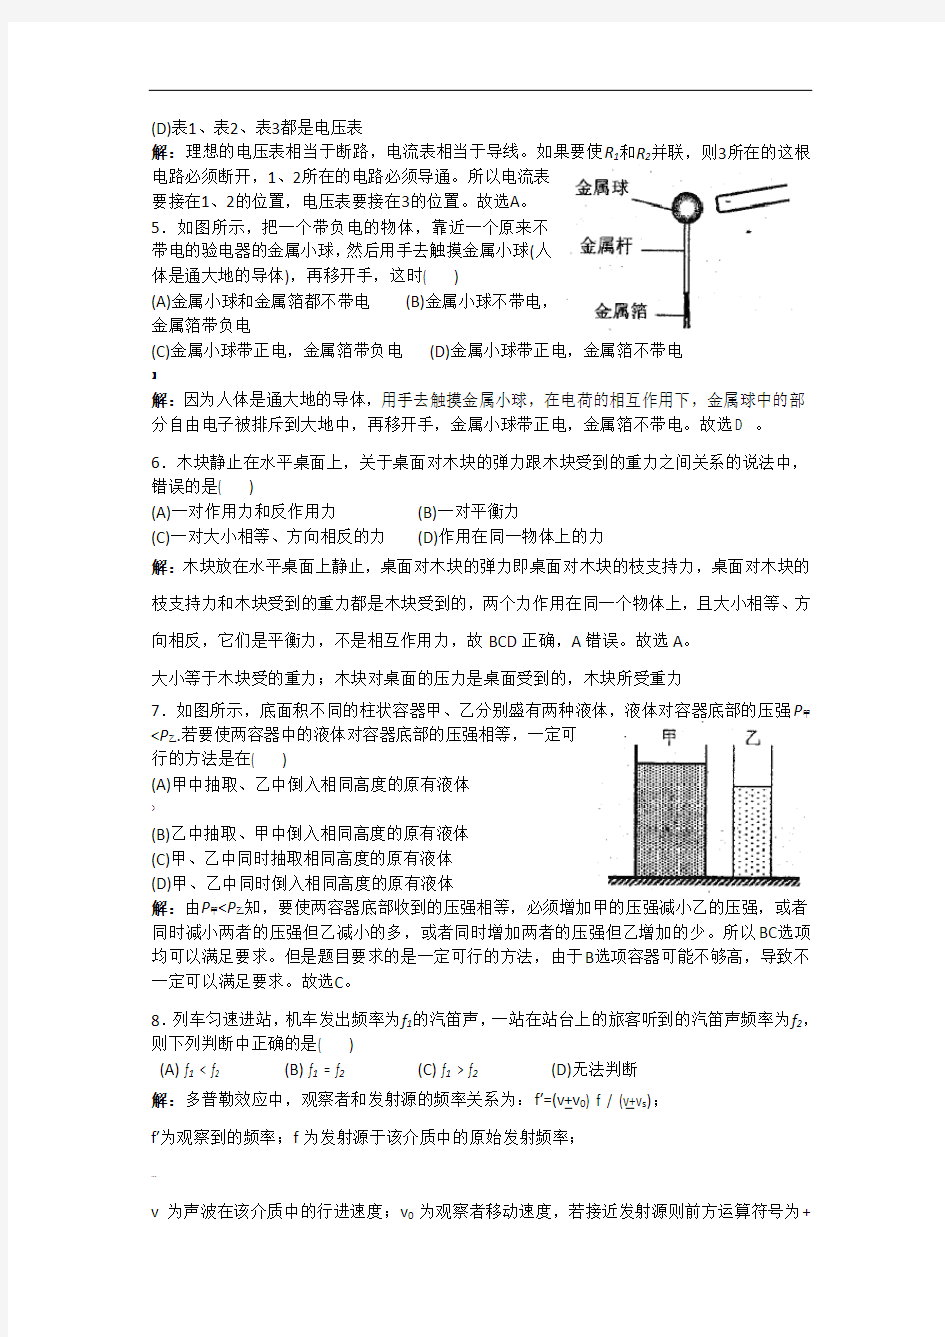 2019年上海市第31届初中物理竞赛初赛试题解答修正版